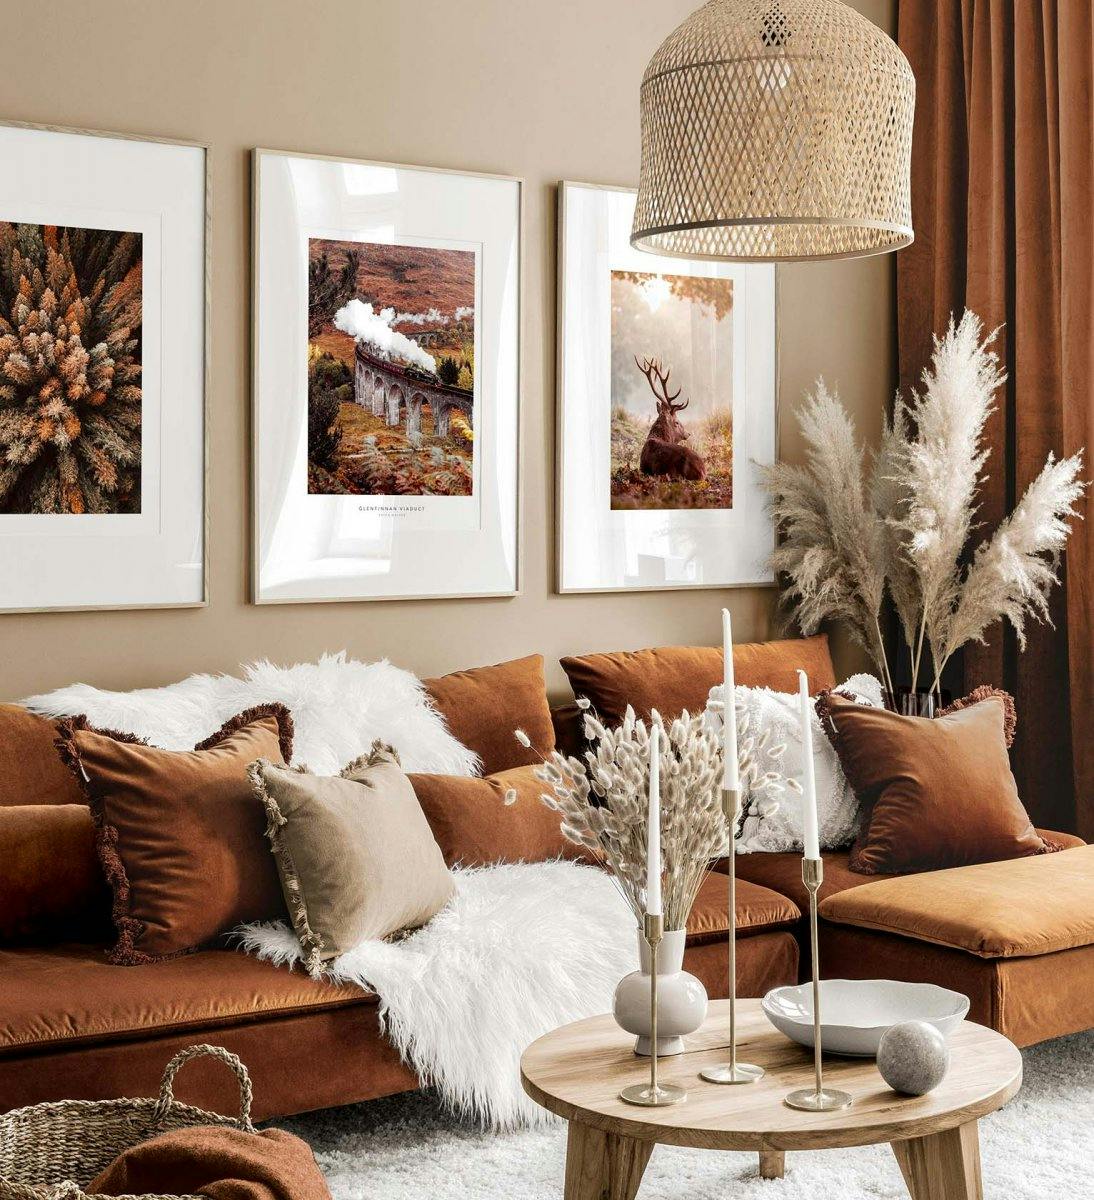 Oranje en bruine galerijwand met inspiratie uit de herfst met eiken lijsten voor woonkamer